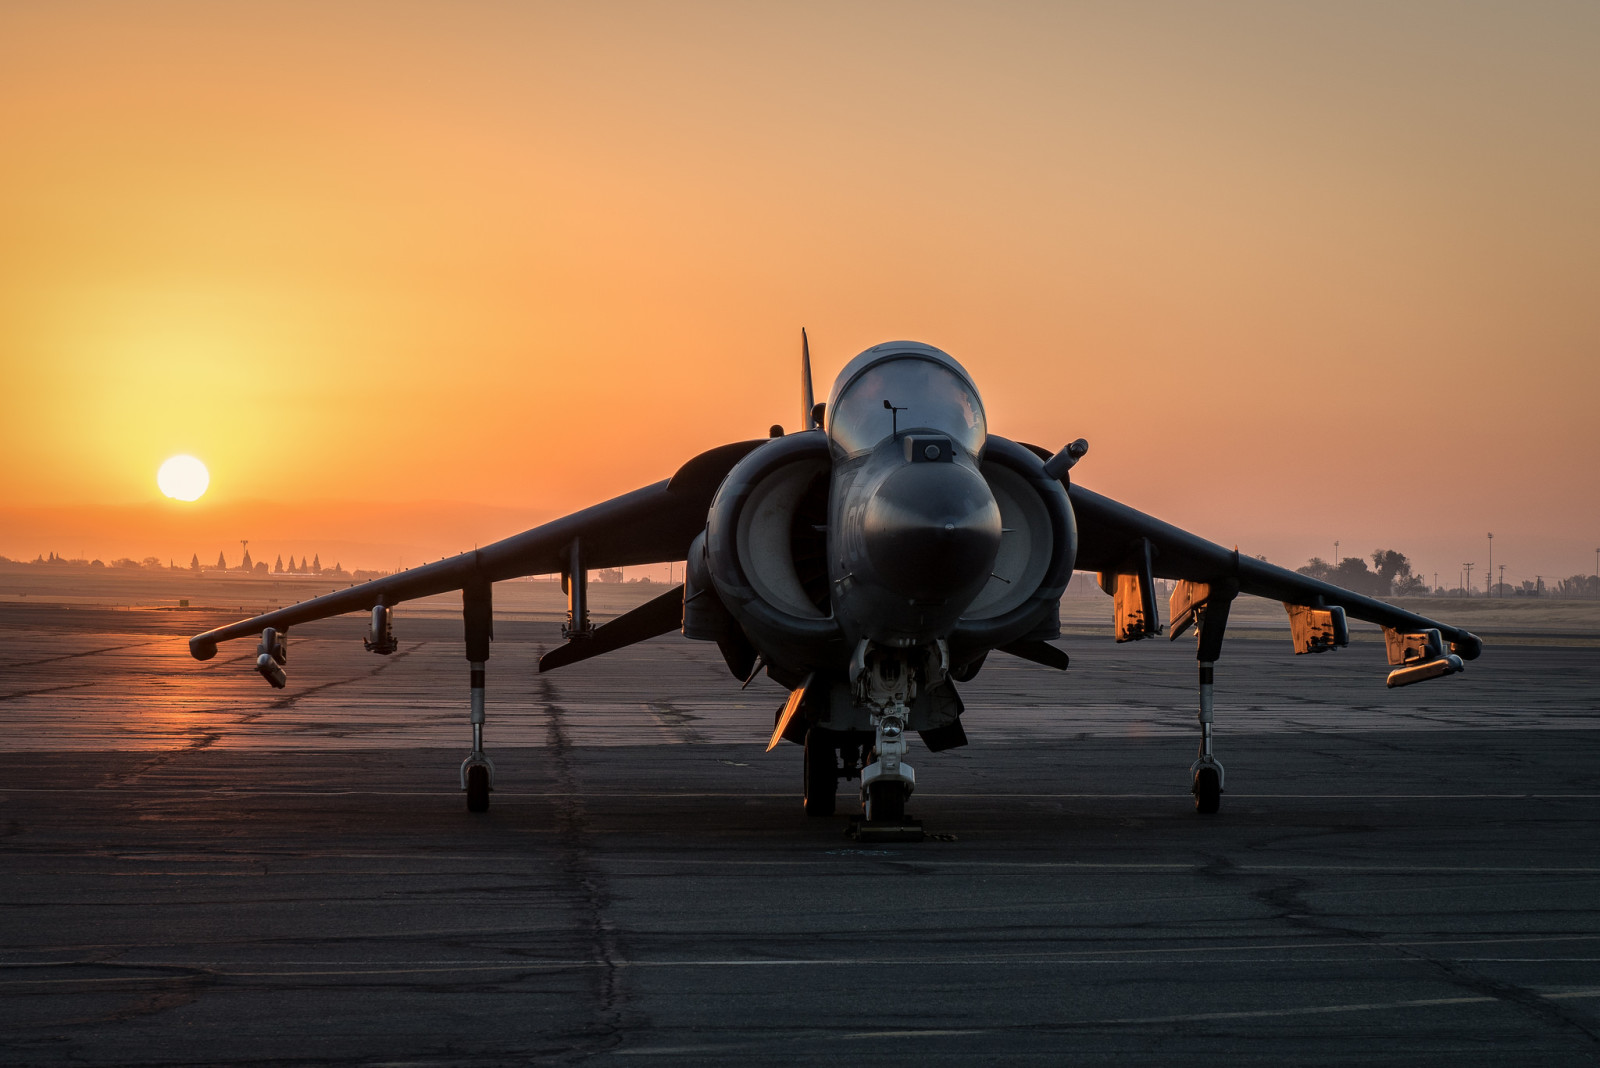 พระอาทิตย์ตกดิน, โจมตี, Harrier II, AV-8B, "Harrier" II